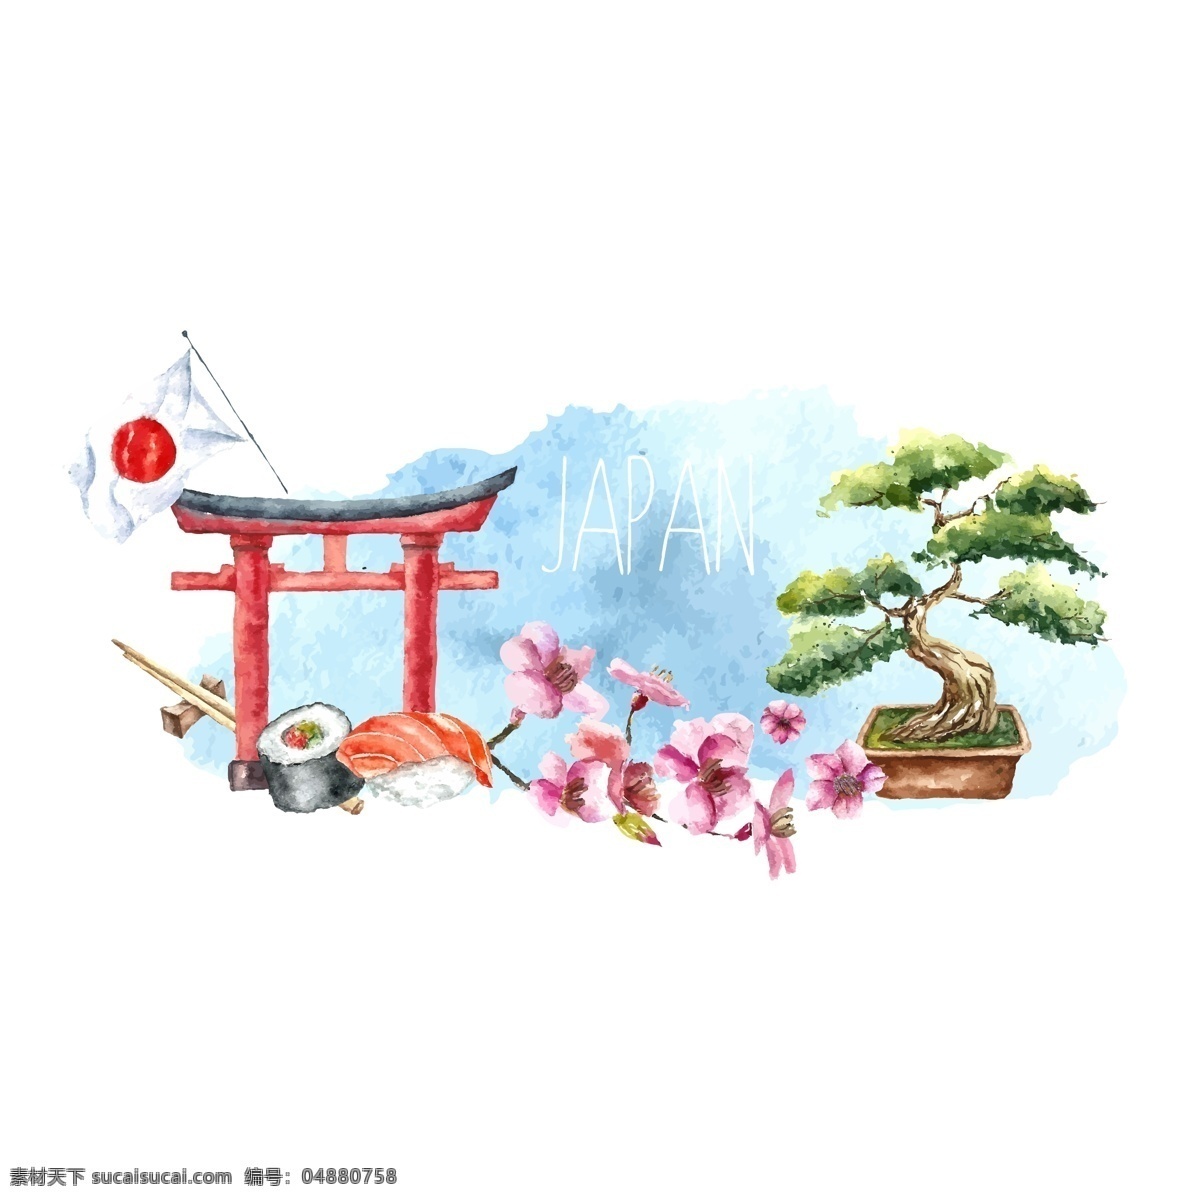 日本 插画 水彩 装饰 元素 寿司 没事 盆栽 花卉 时尚背景 画册封面背景 广告平面素材